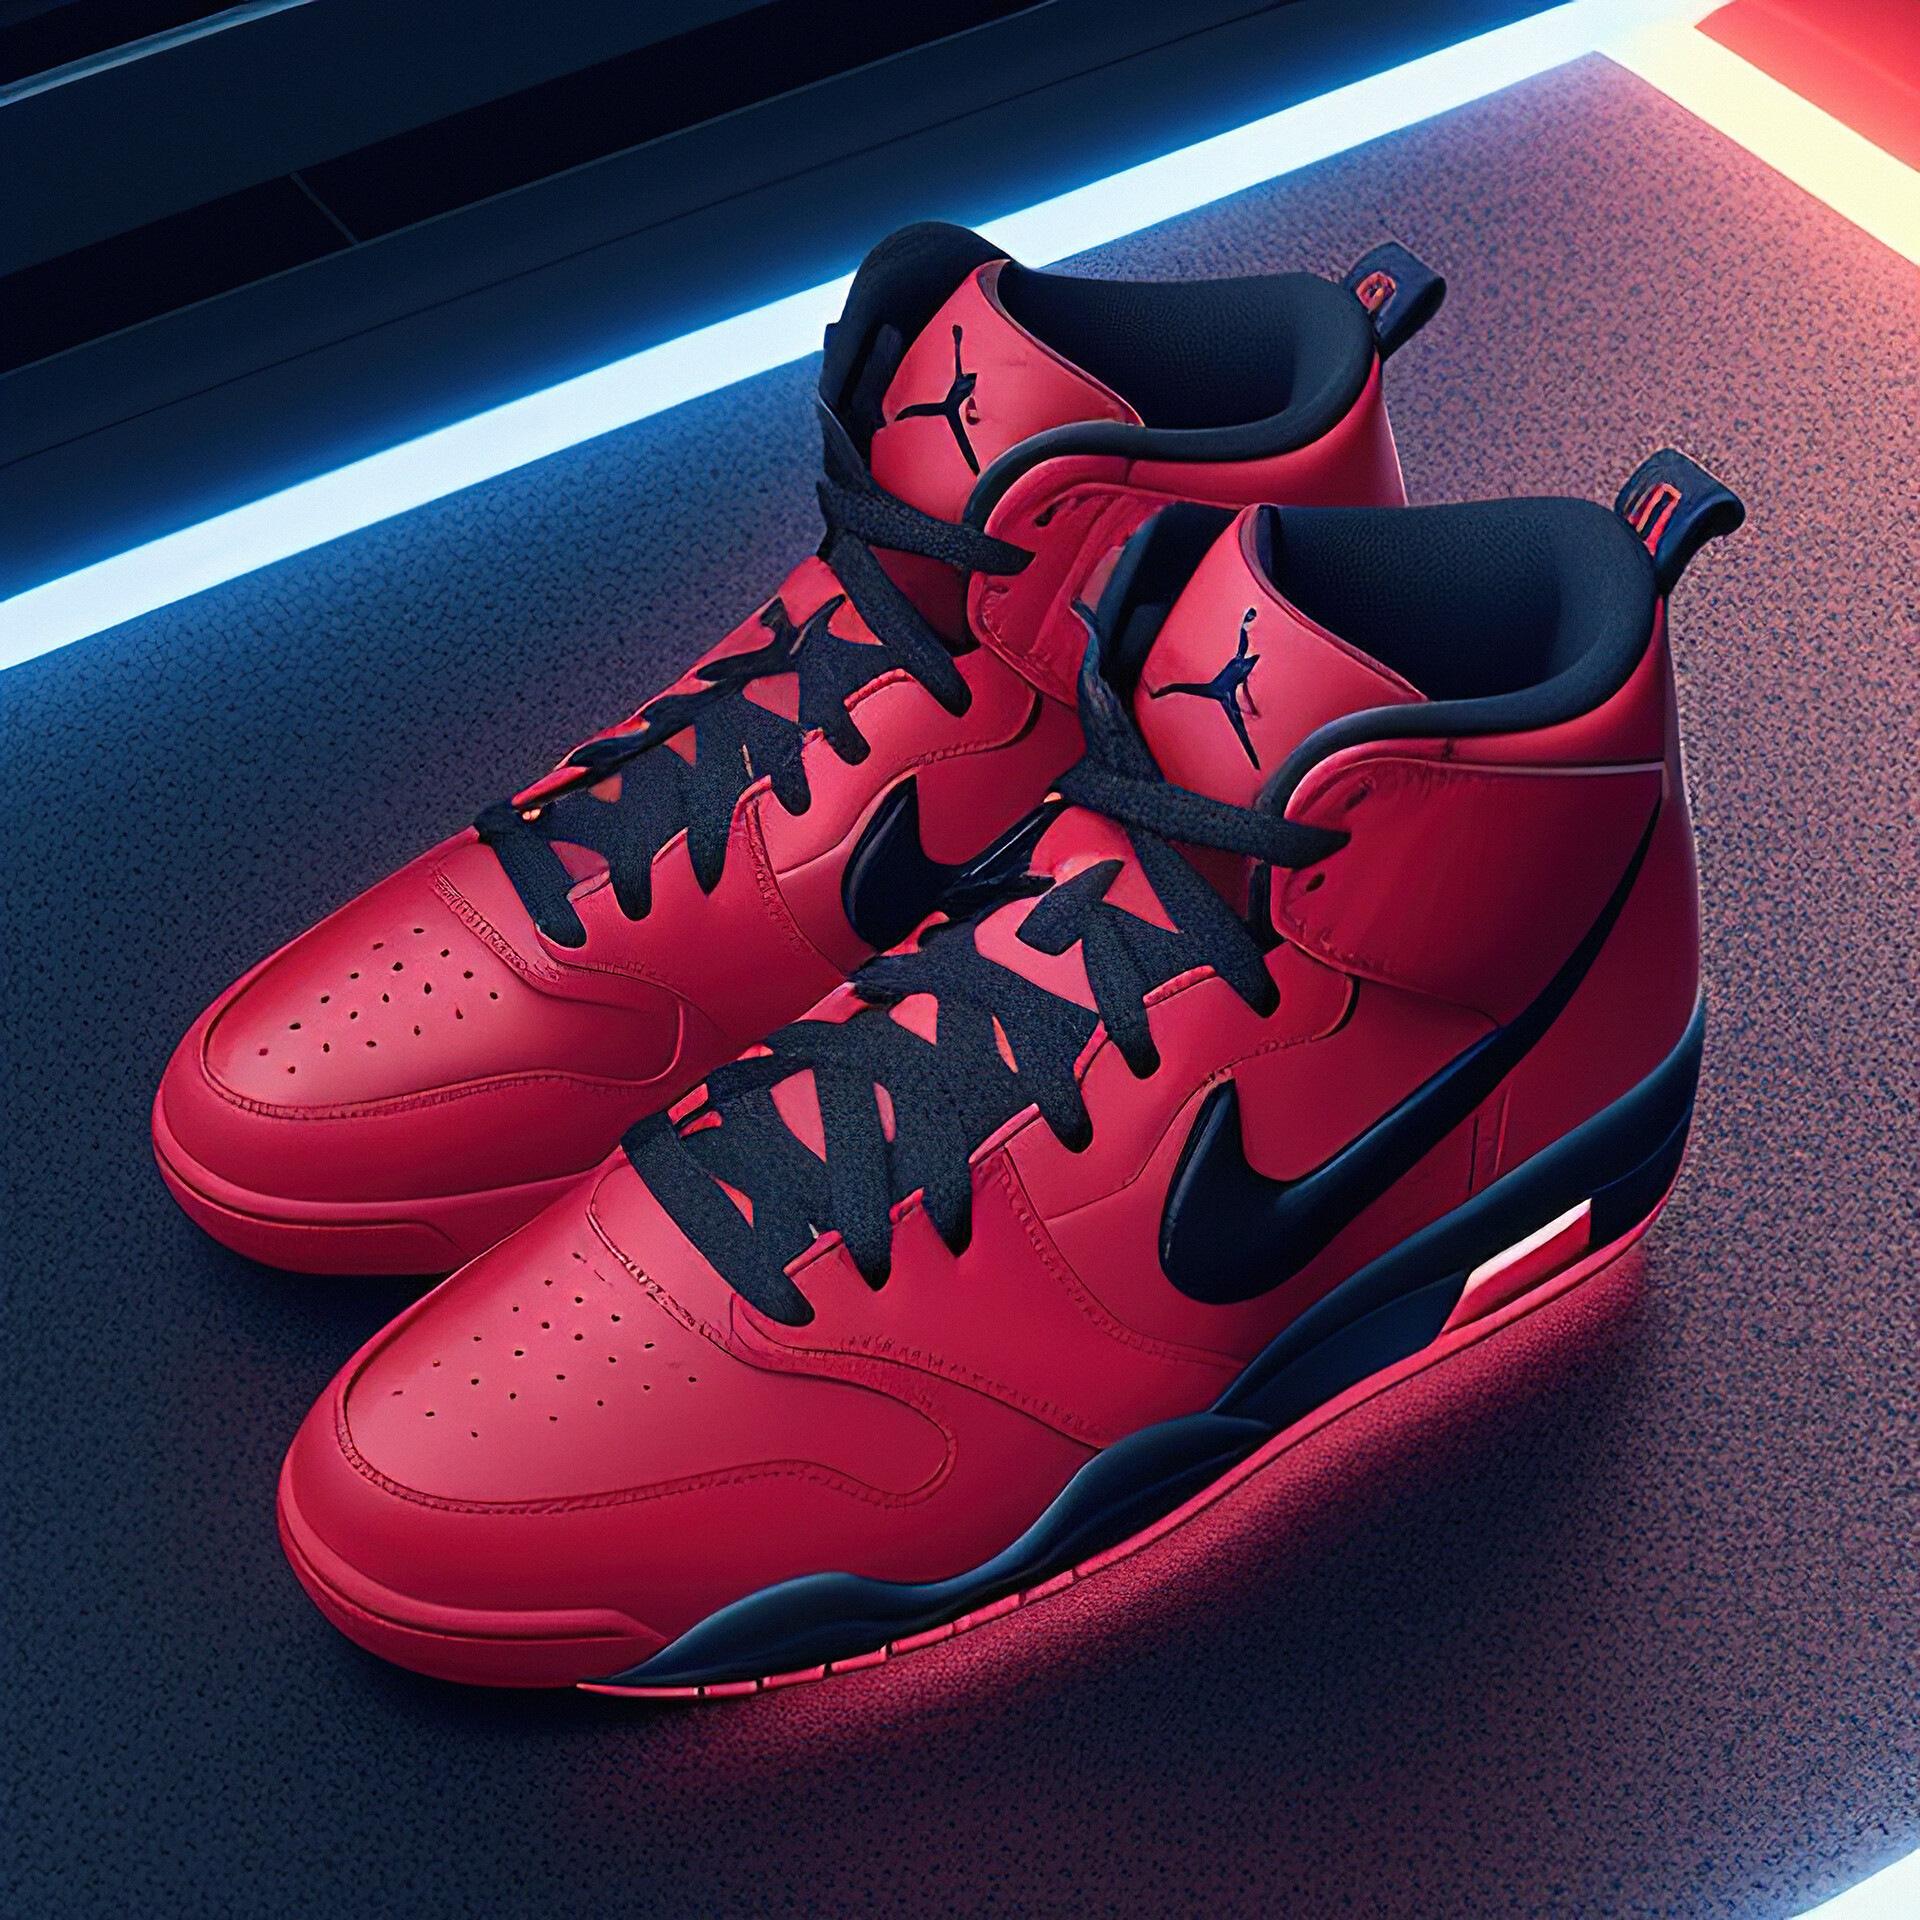 Concept art of Nike air Jordan 1 in the future 